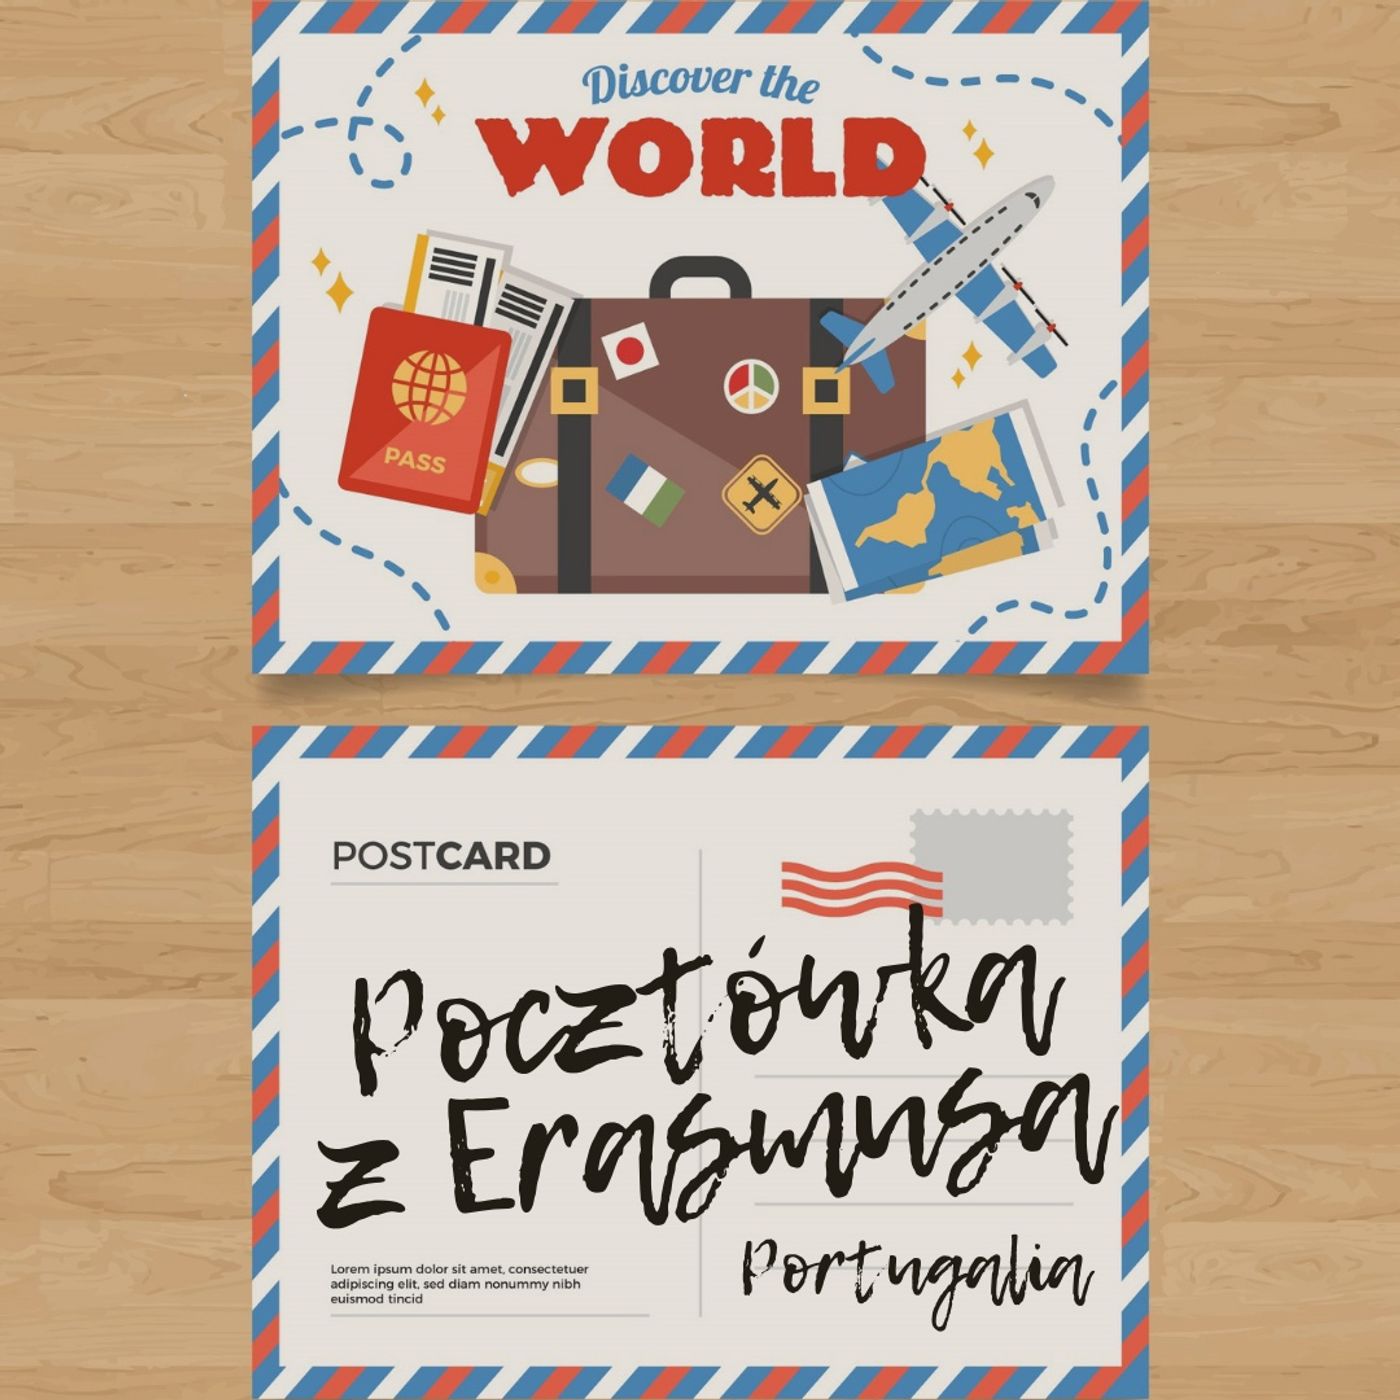 Pocztówka z Erasmusa 2 - Portugalia